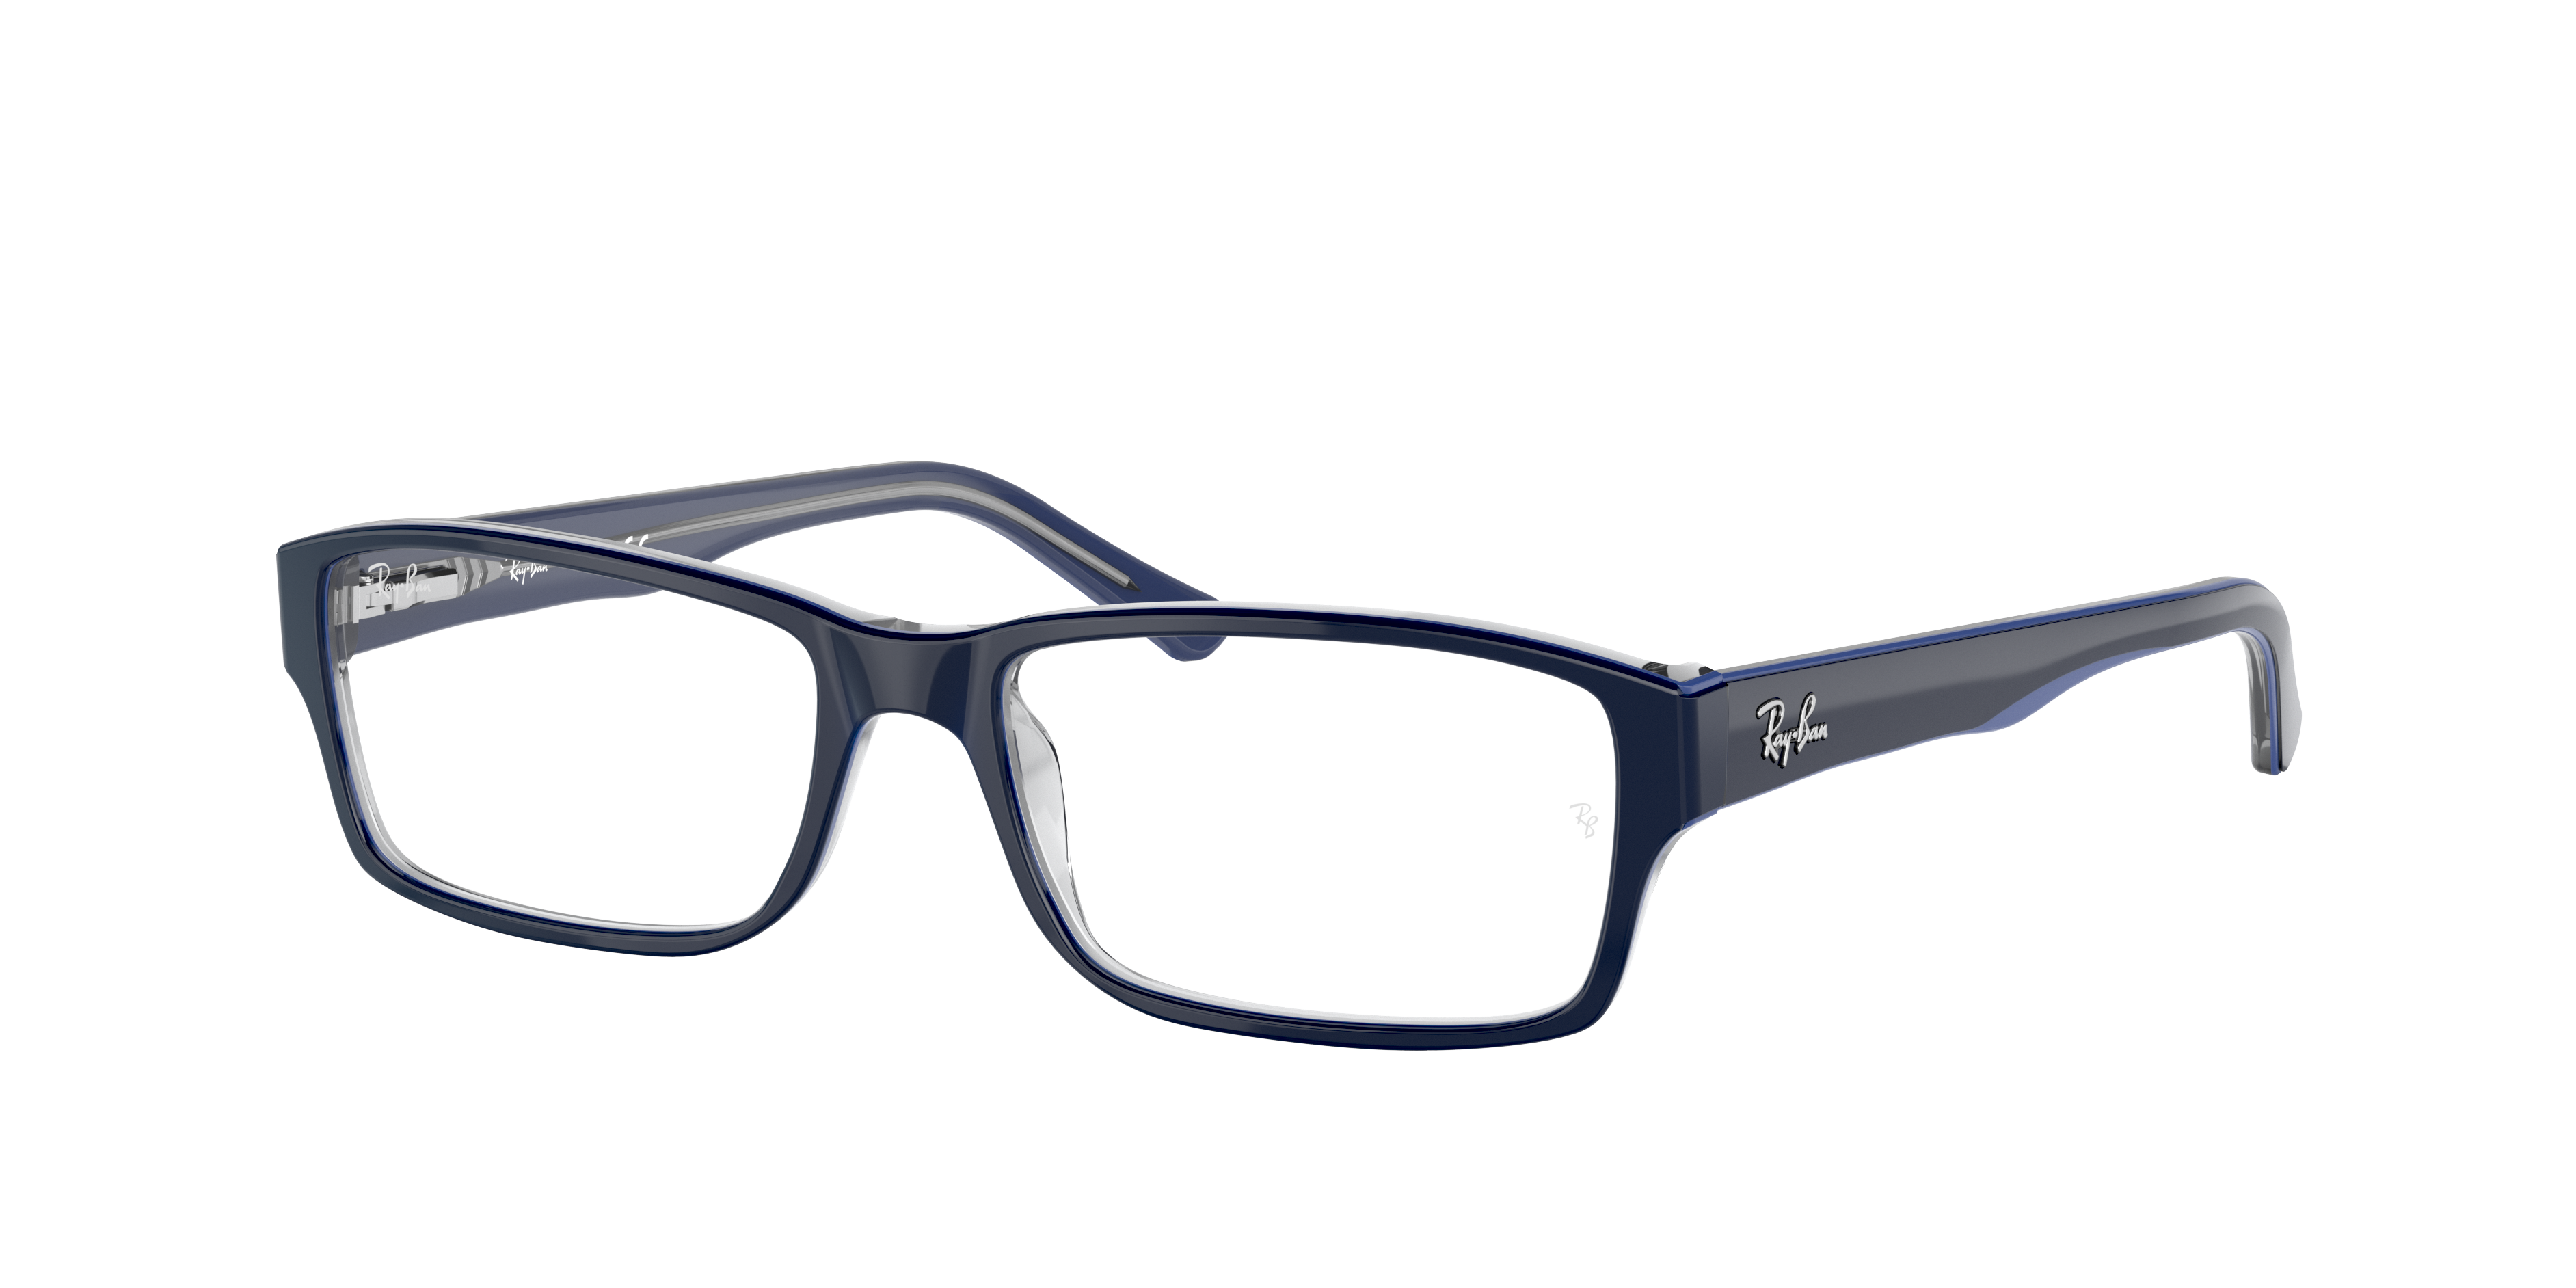 ray ban canada prescription sunglasses